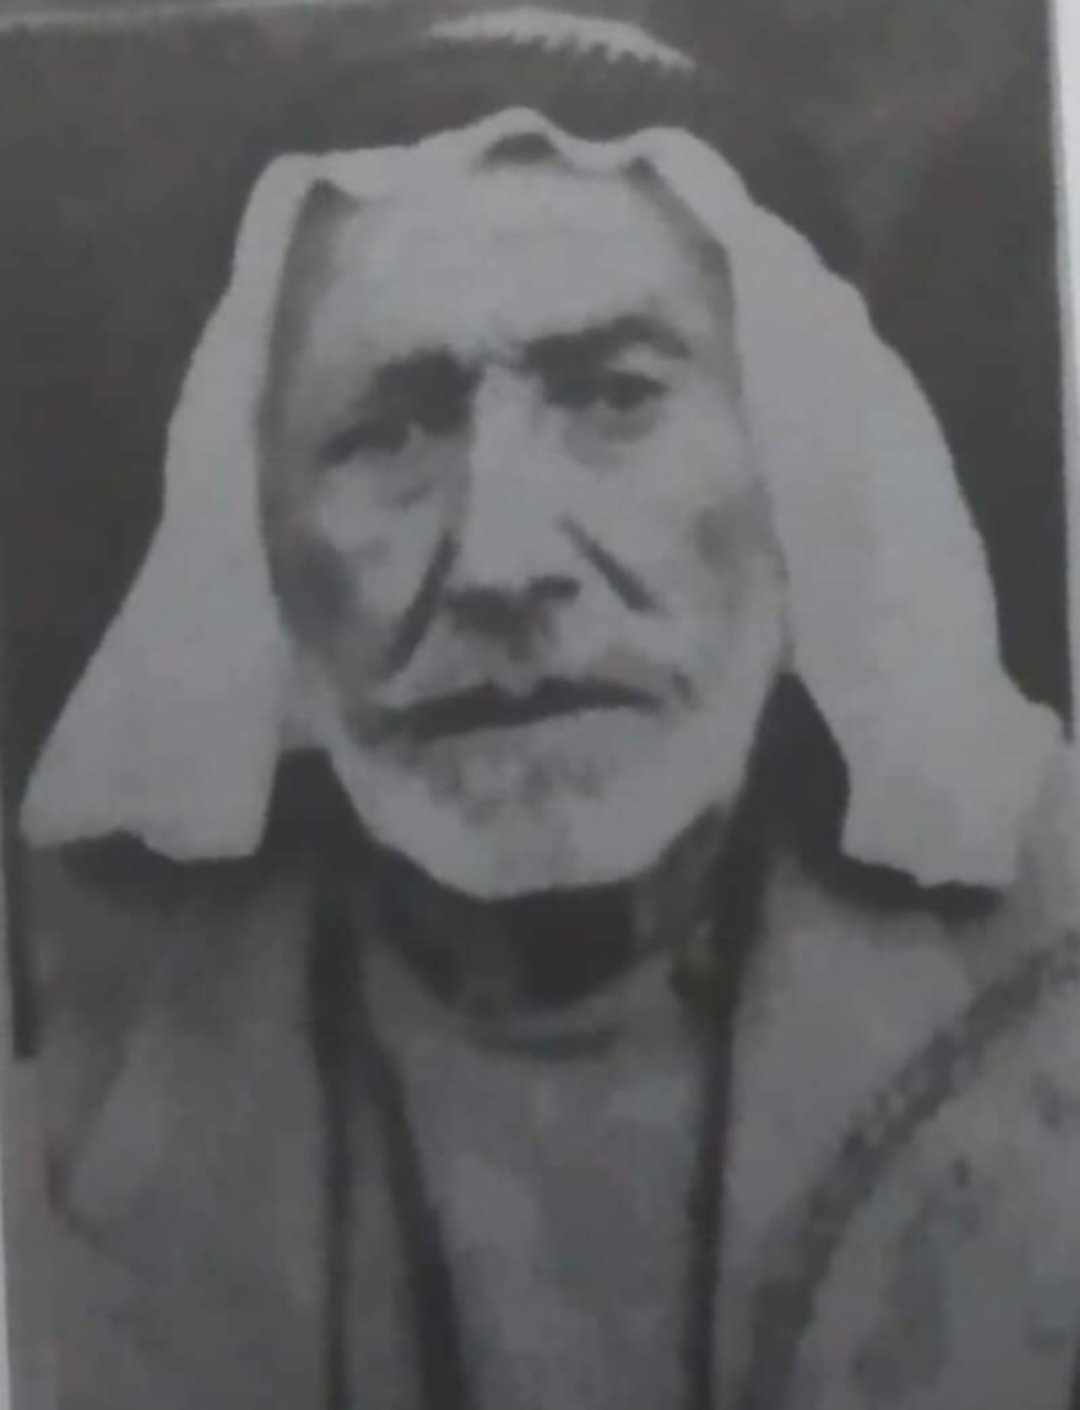 الشيخ موسى الحمود الزغول ...من شيوخ جبل عجلون